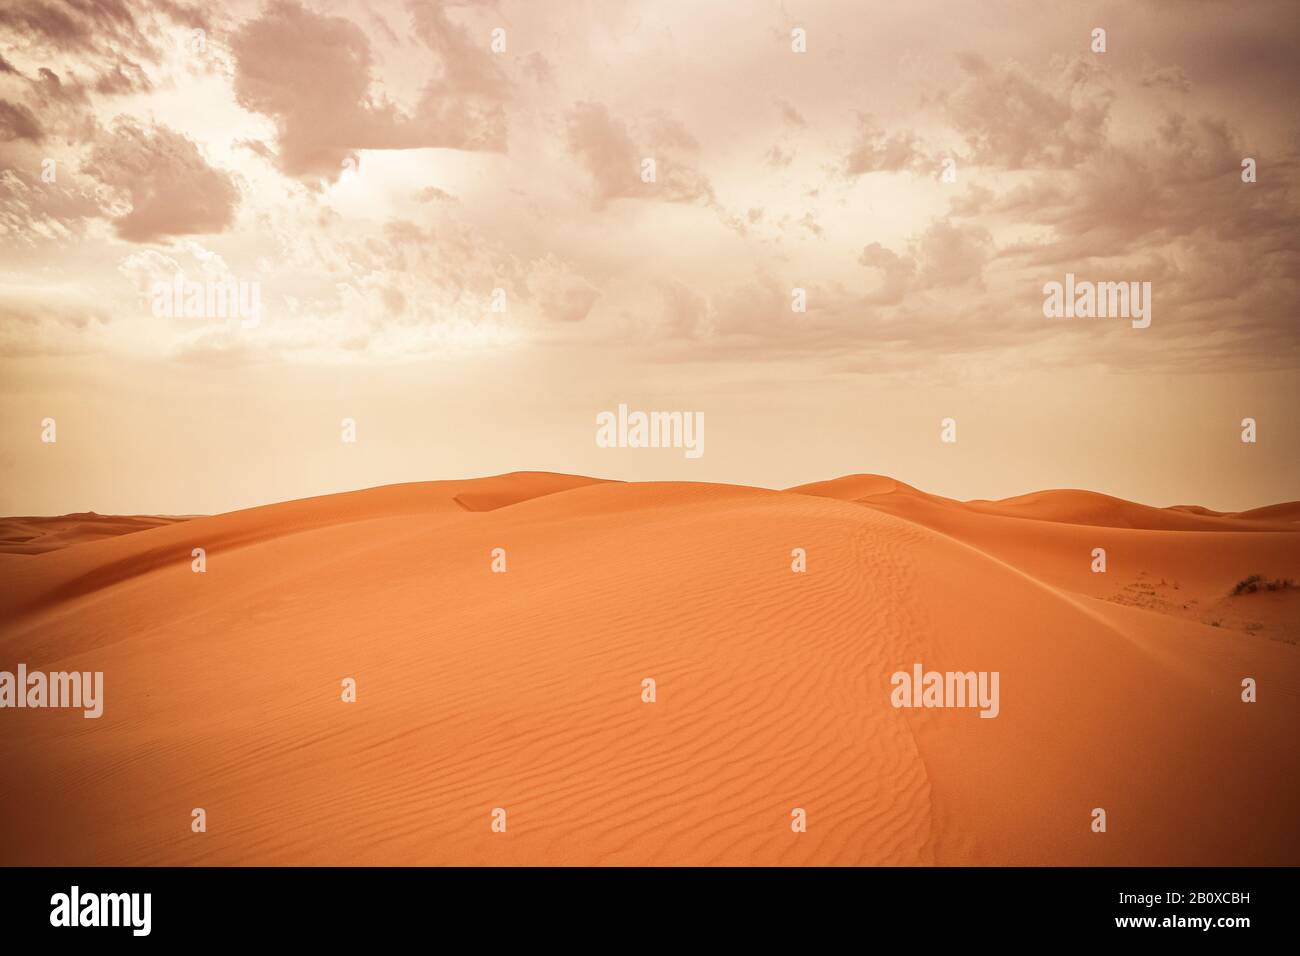 Sanddüne in der saudischen Wüste - Schöne arabische Wüste Stockfoto